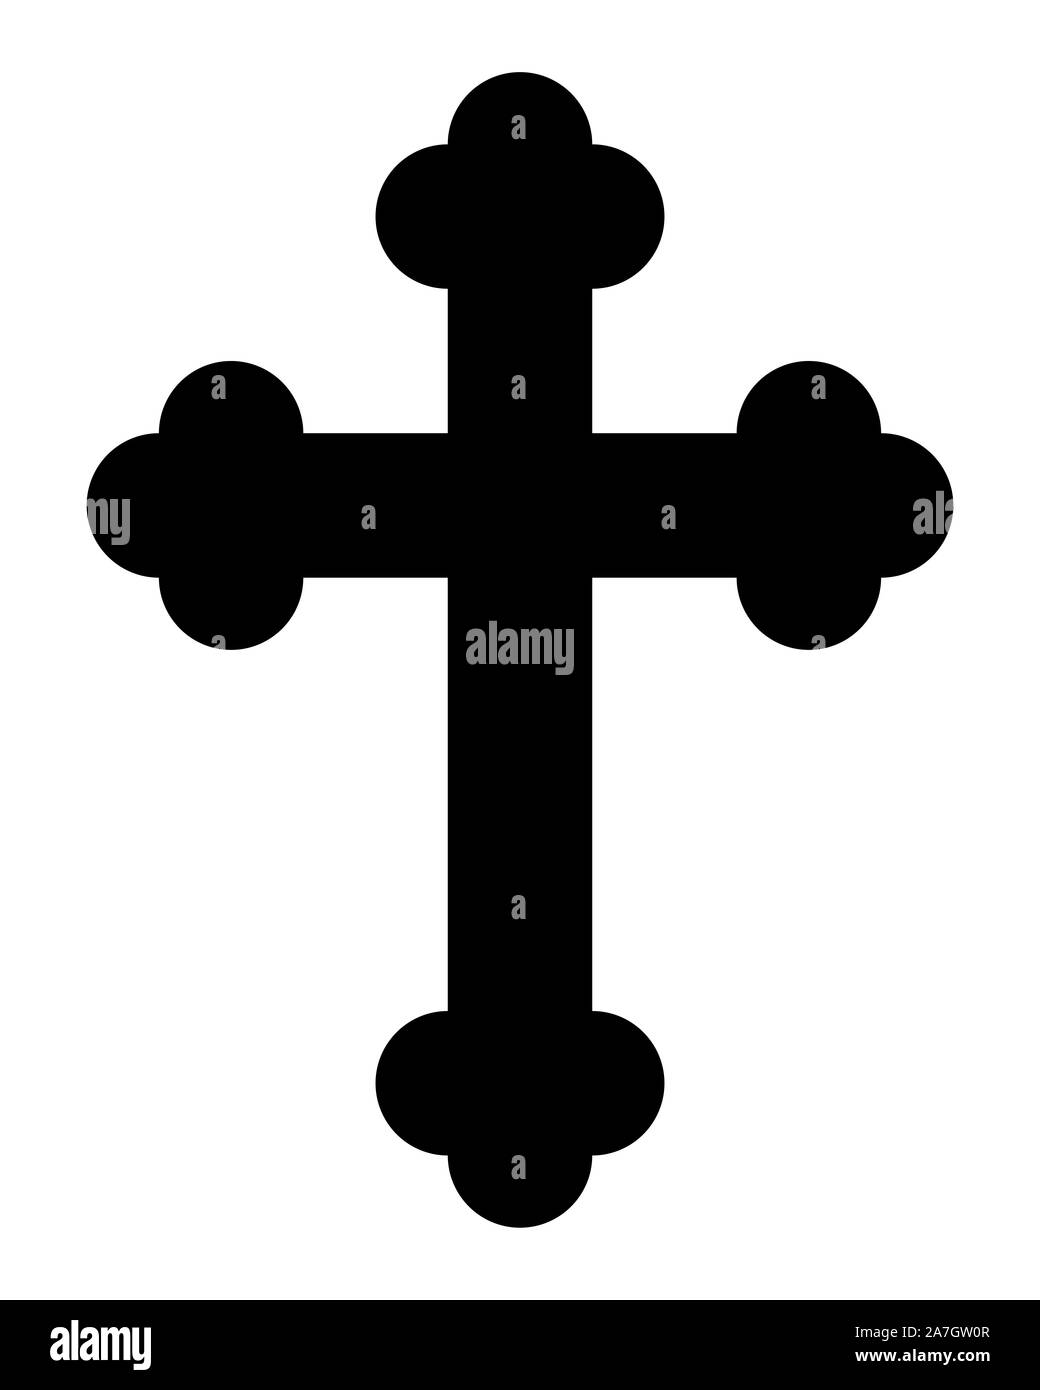 Croce ortodossa Foto e Immagini Stock in Bianco e Nero - Alamy